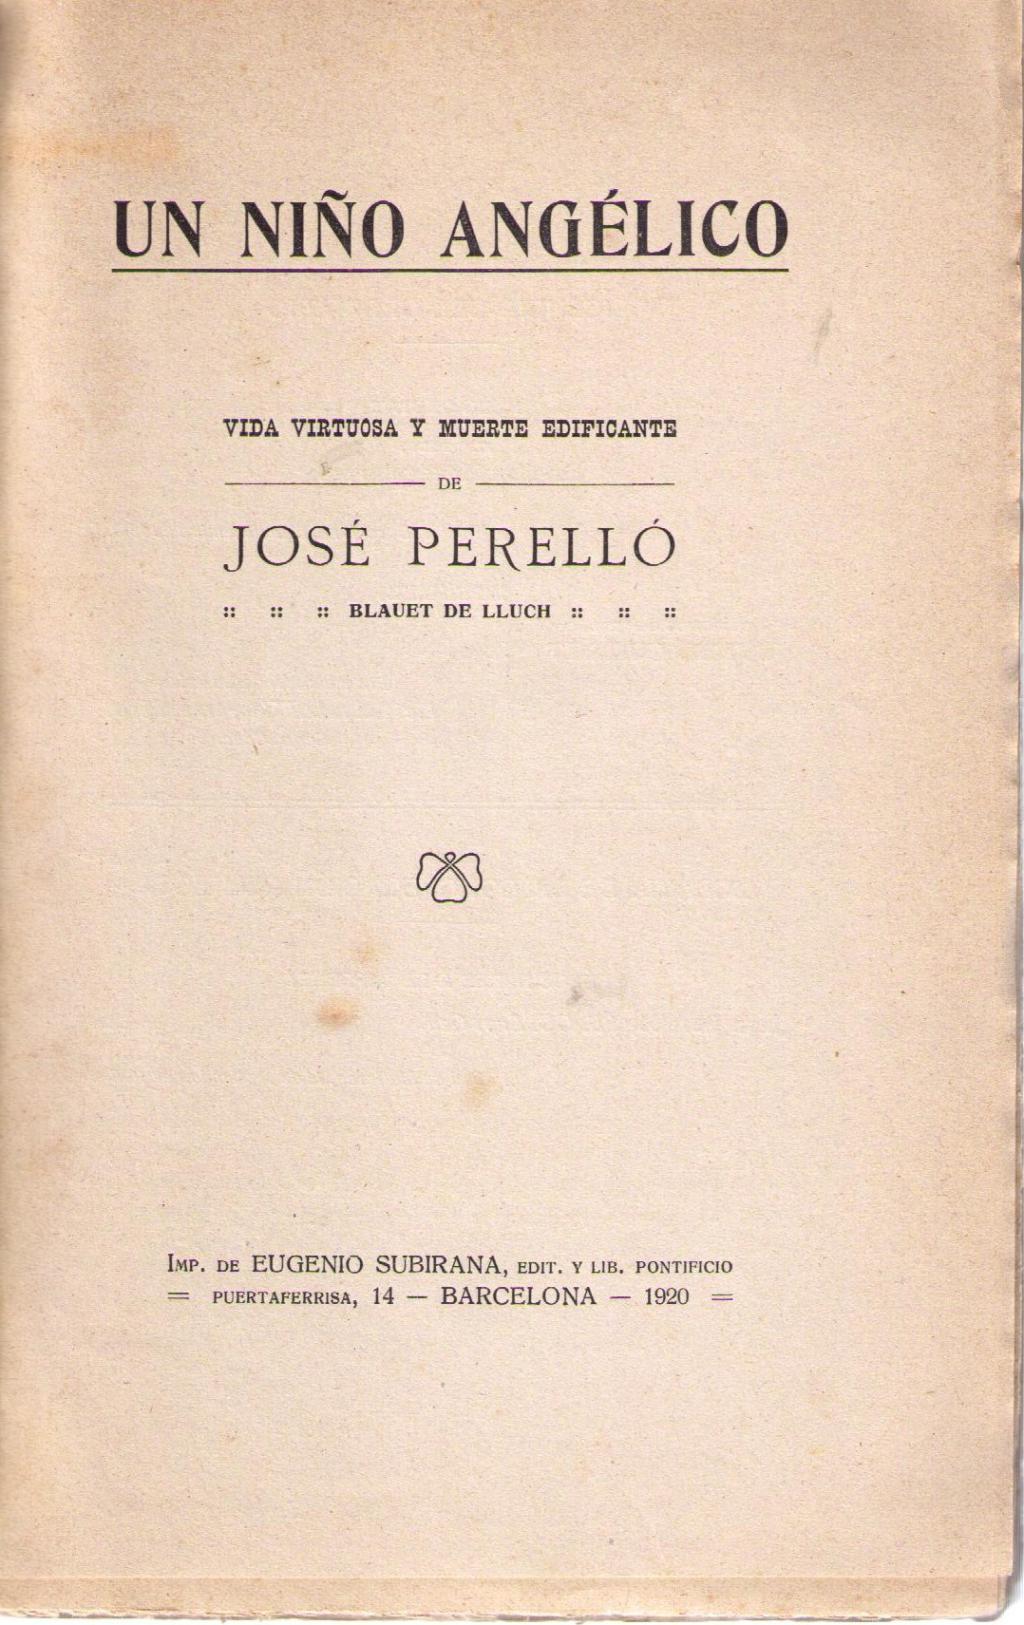 Coberta de Vida virtuosa y muerte edificante de José Perelló